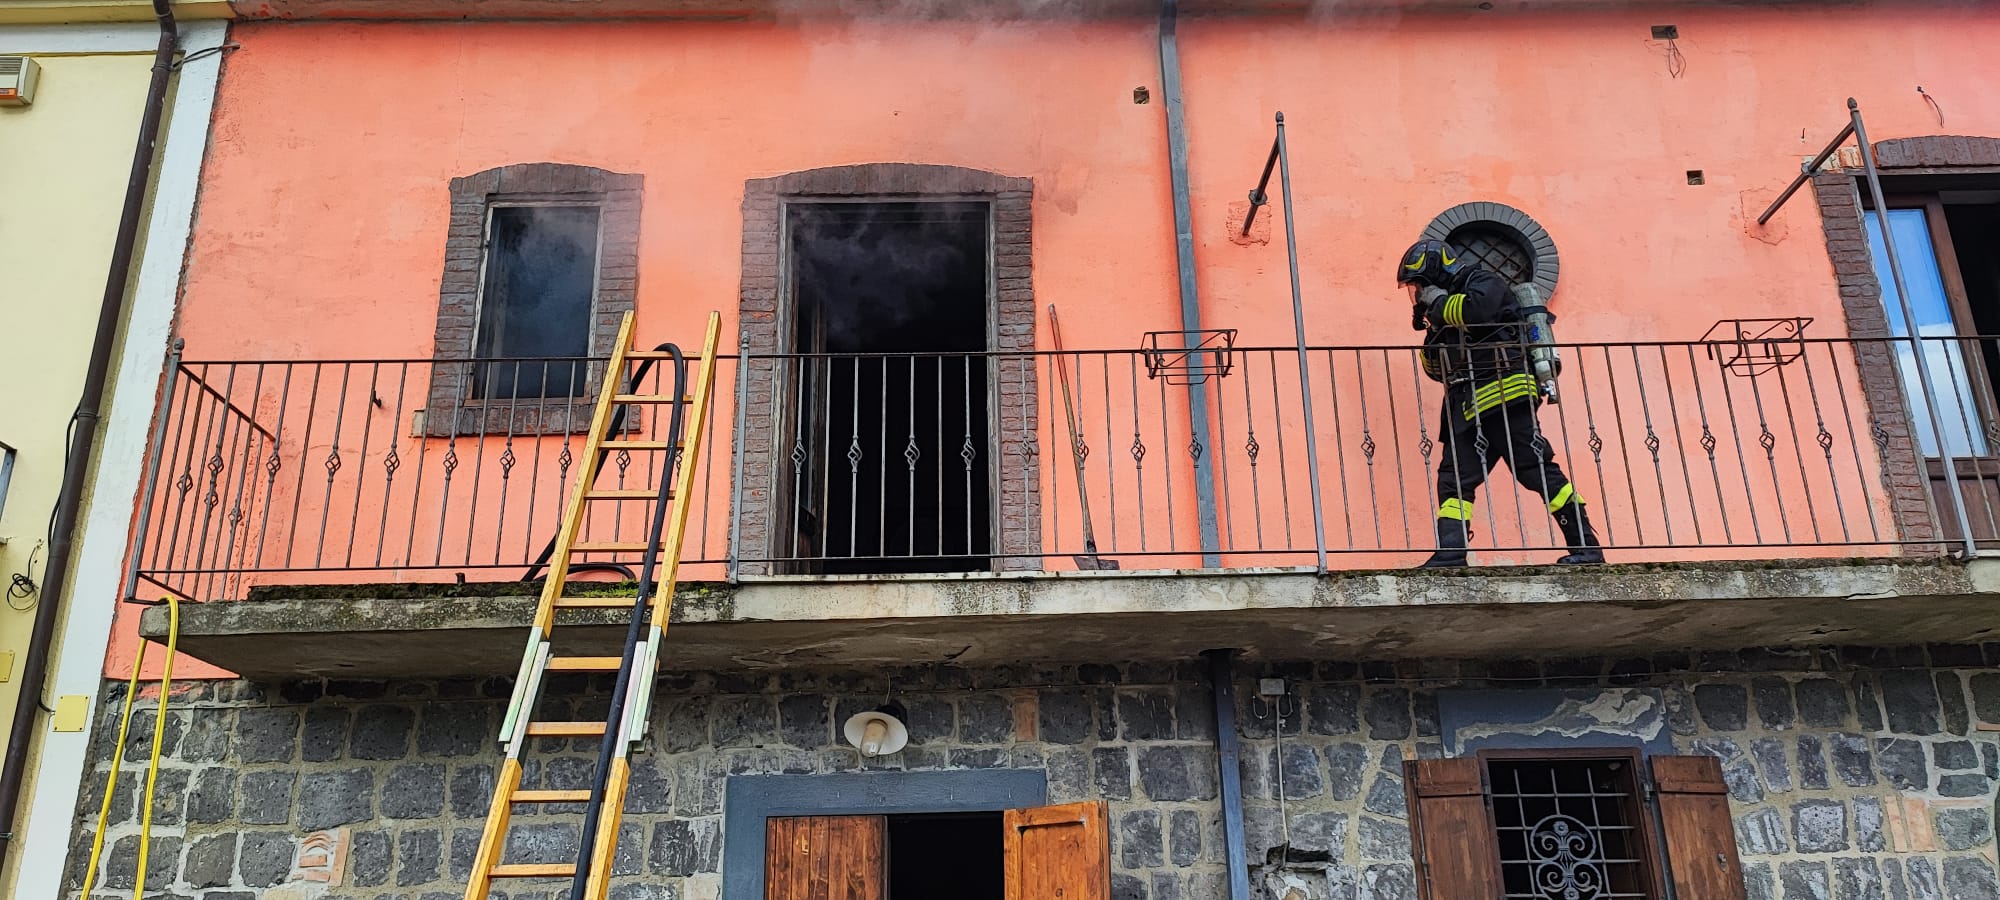 Amorosi, incendio in un’abitazione intervengono i vigili del fuoco